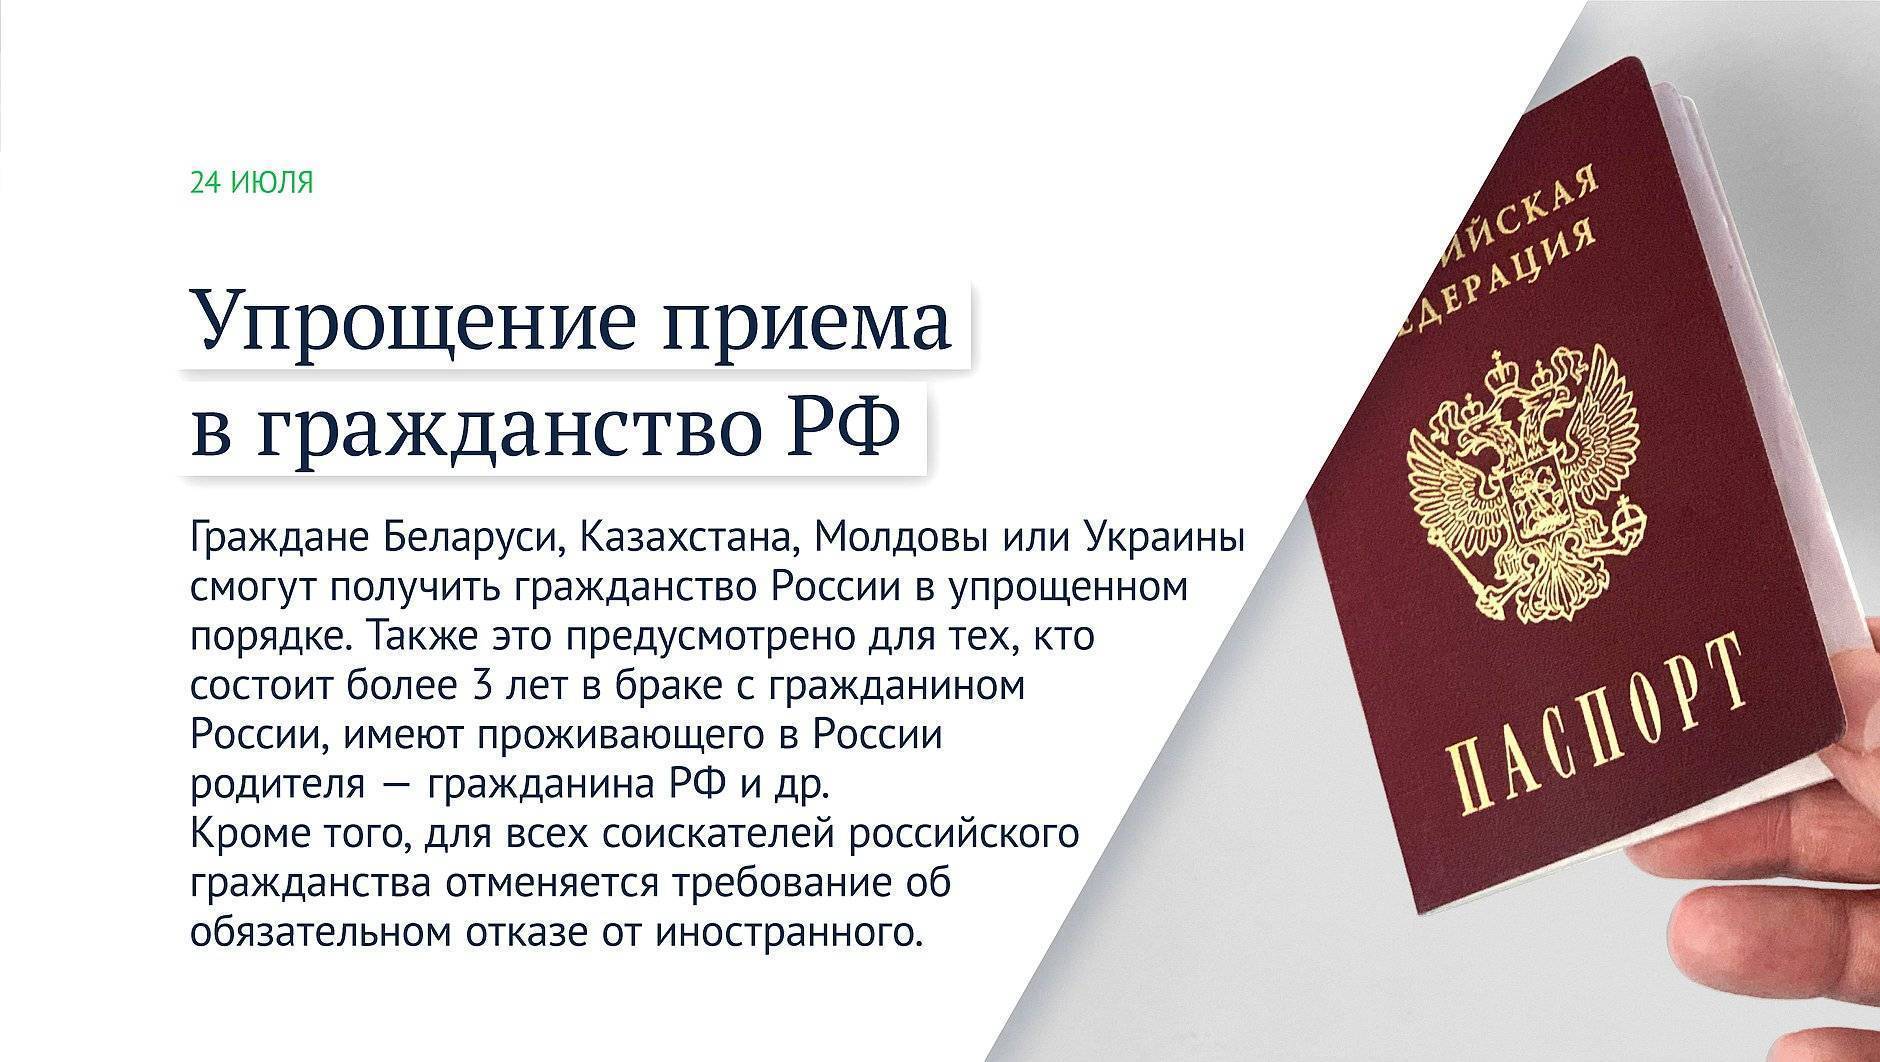 Как получить гражданство рф гражданину молдовы в 2019 году в упрощенном порядке